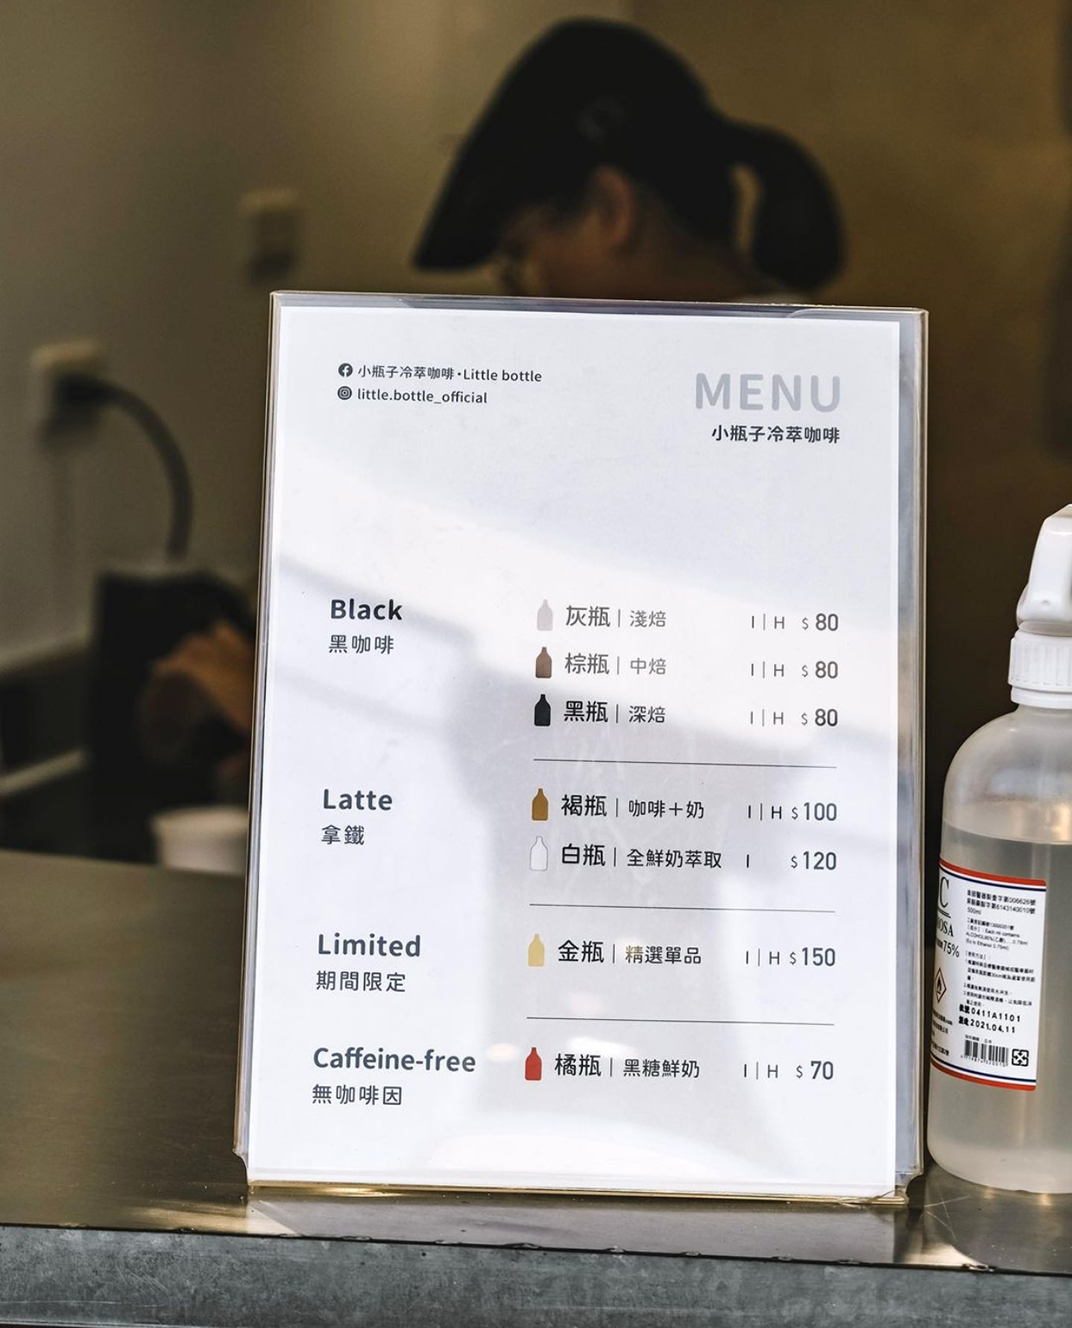 小瓶子冷萃咖啡·Little bottle 台湾 上海 咖啡店 字体设计 菜单设计 logo设计 vi设计 空间设计